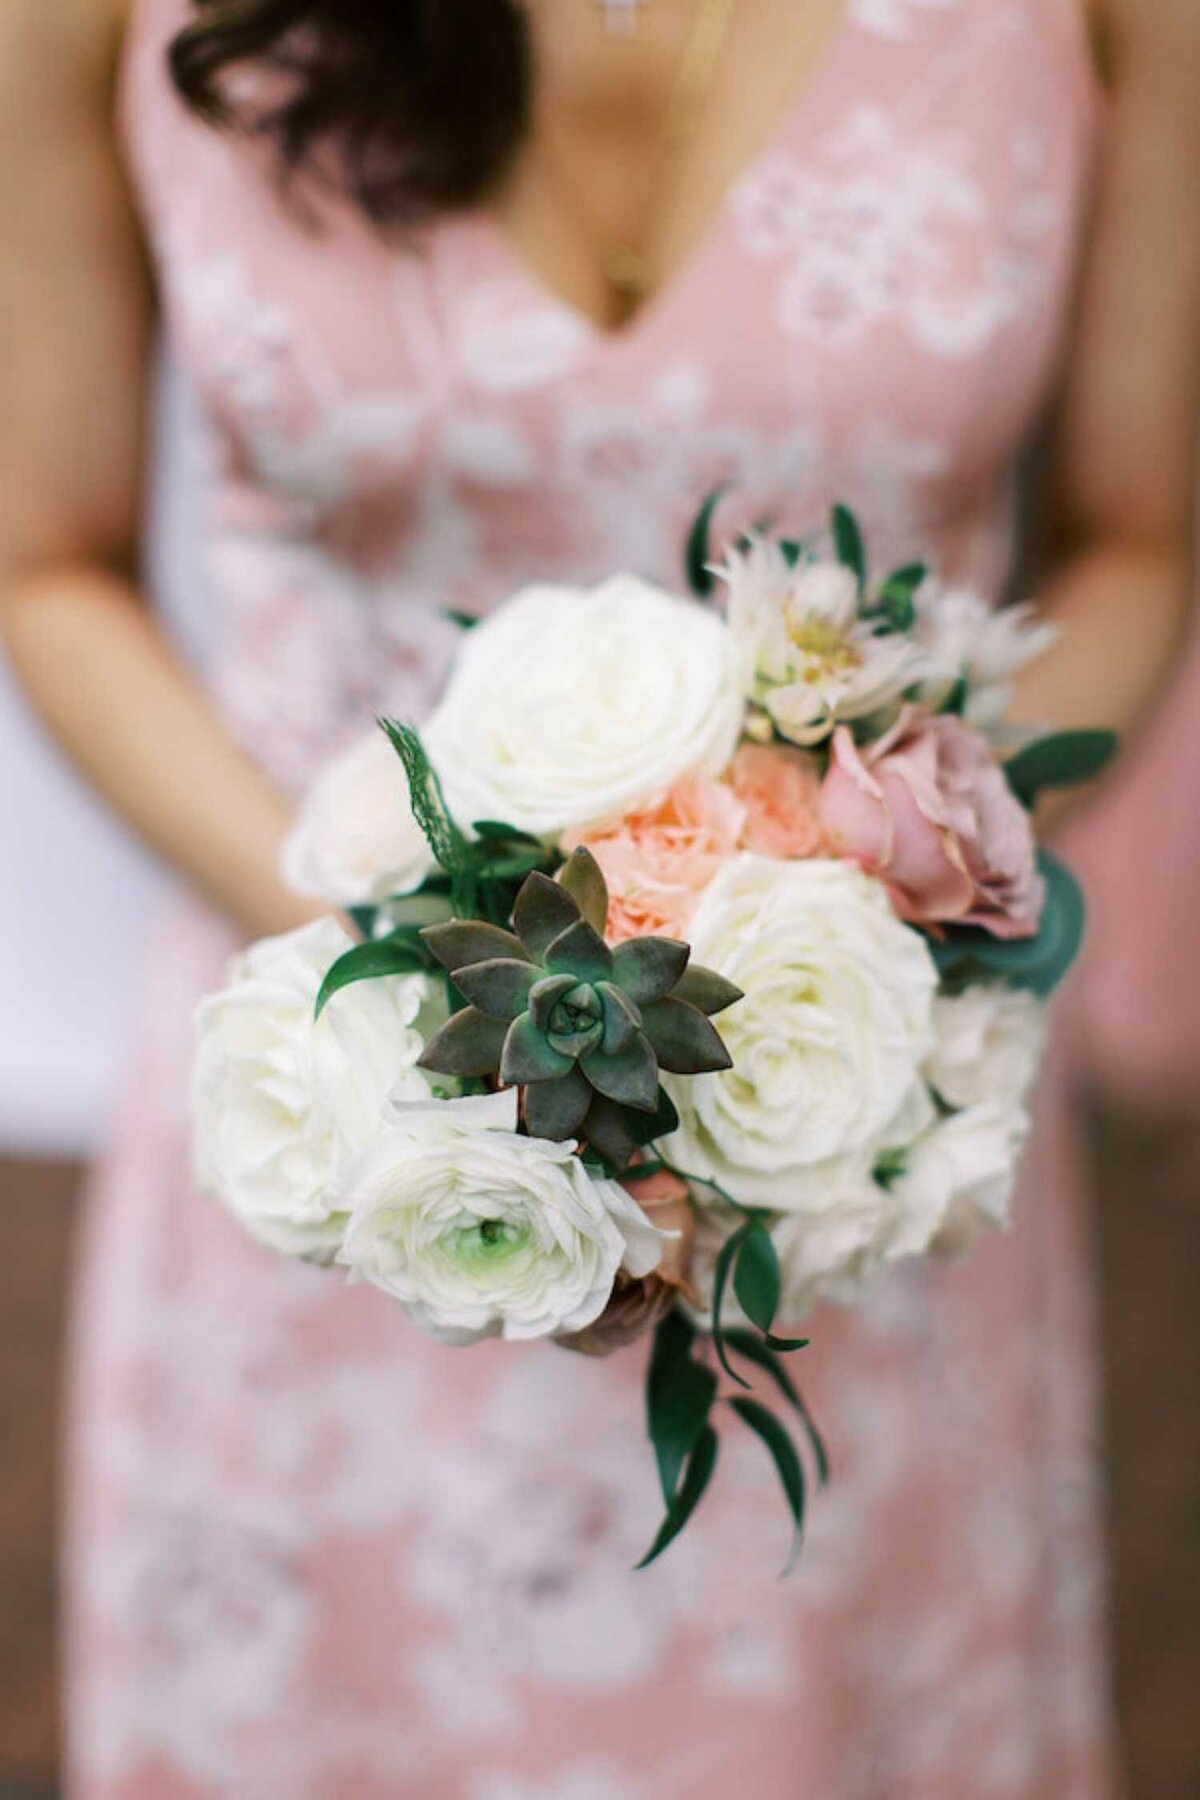 Garden succulent bohemian bouquet with a printed bridesmaid dress for a luxury Chicago outdoor garden wedding.